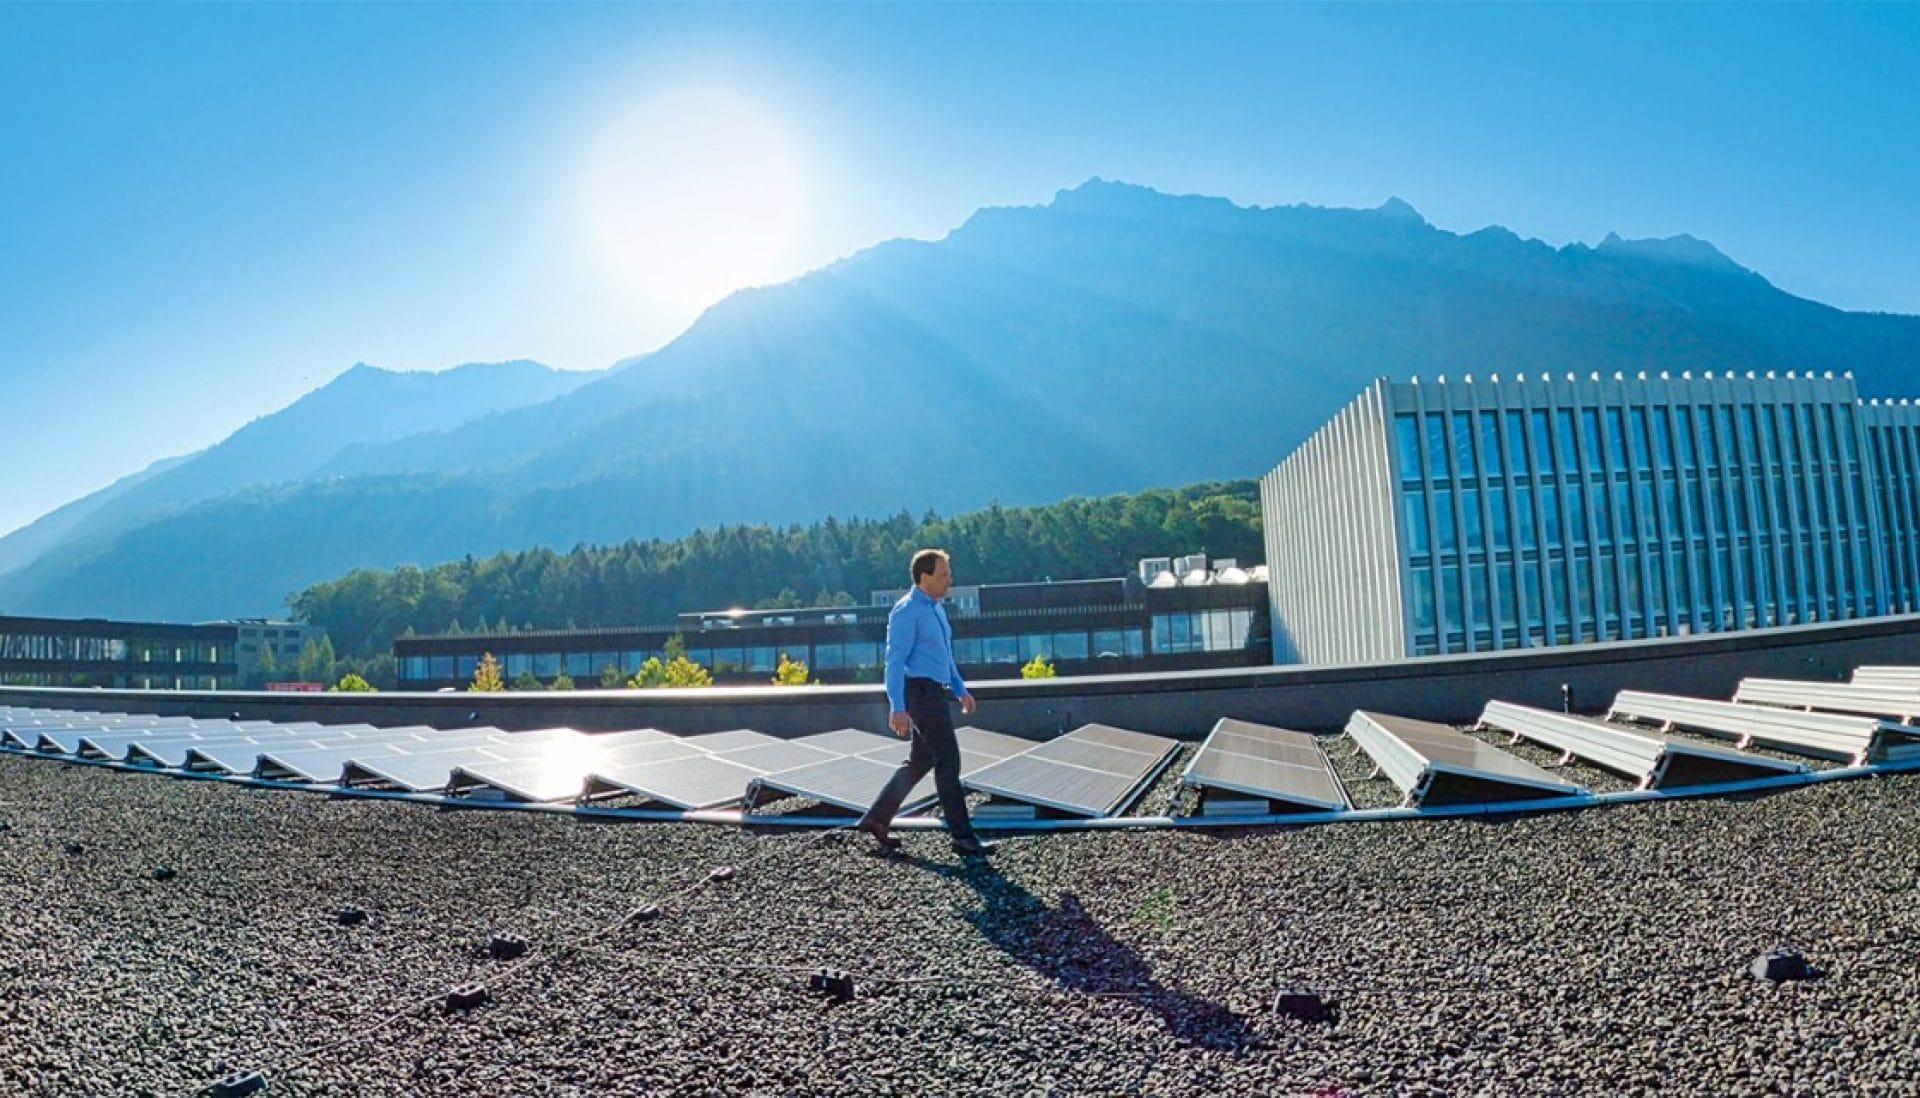 Un collaborateur Hilti marche sur un toit équipé de panneaux solaires 